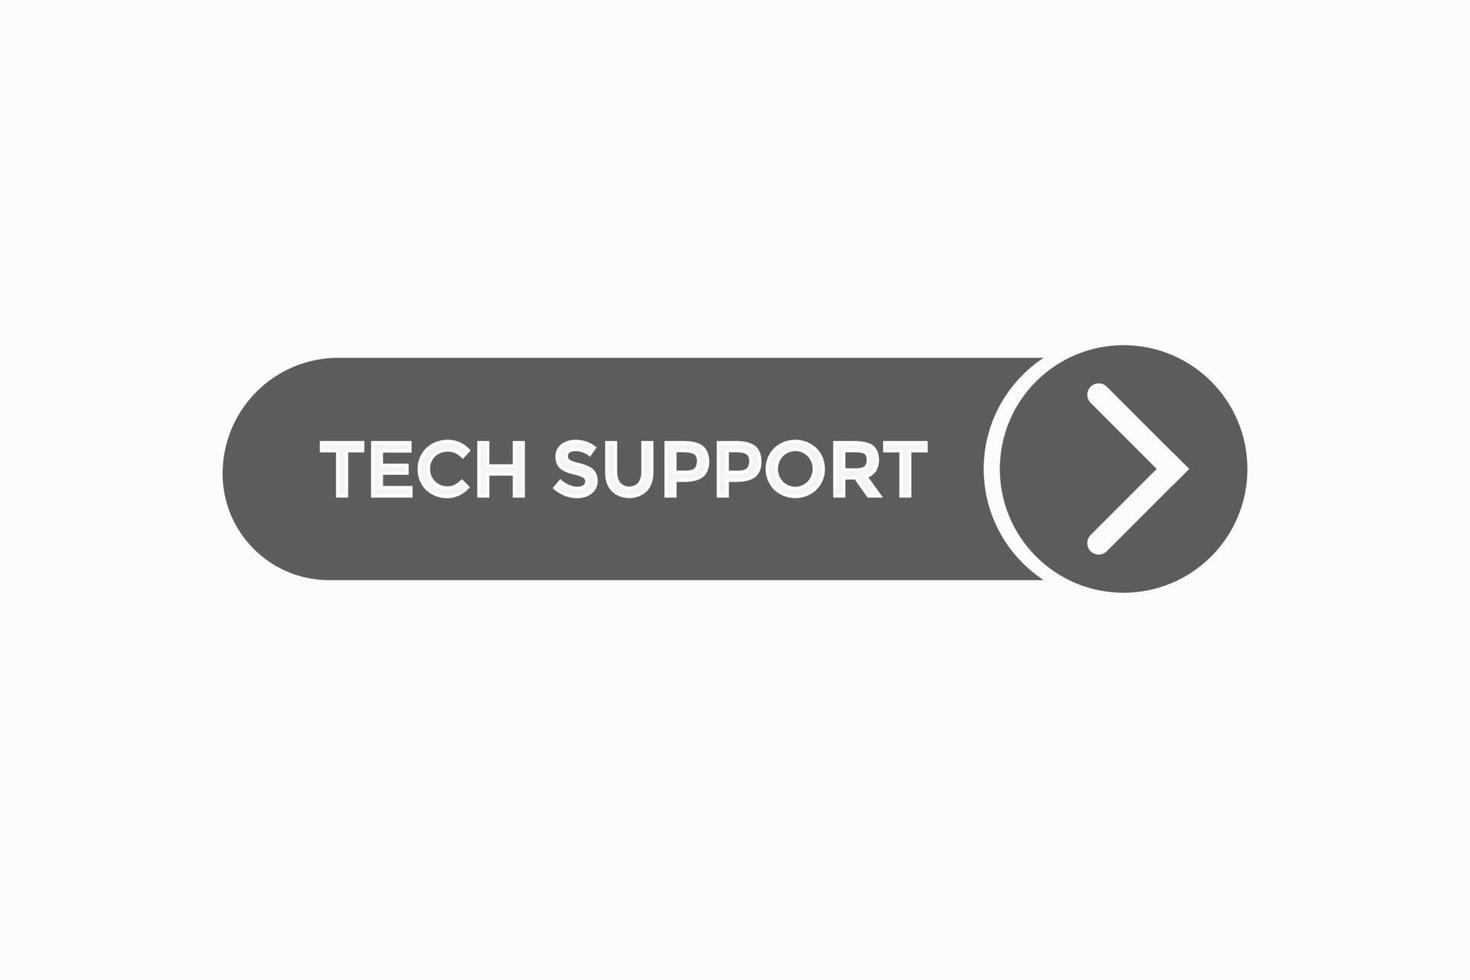 Tech supporto pulsante vectors.sign etichetta discorso bolla Tech supporto vettore